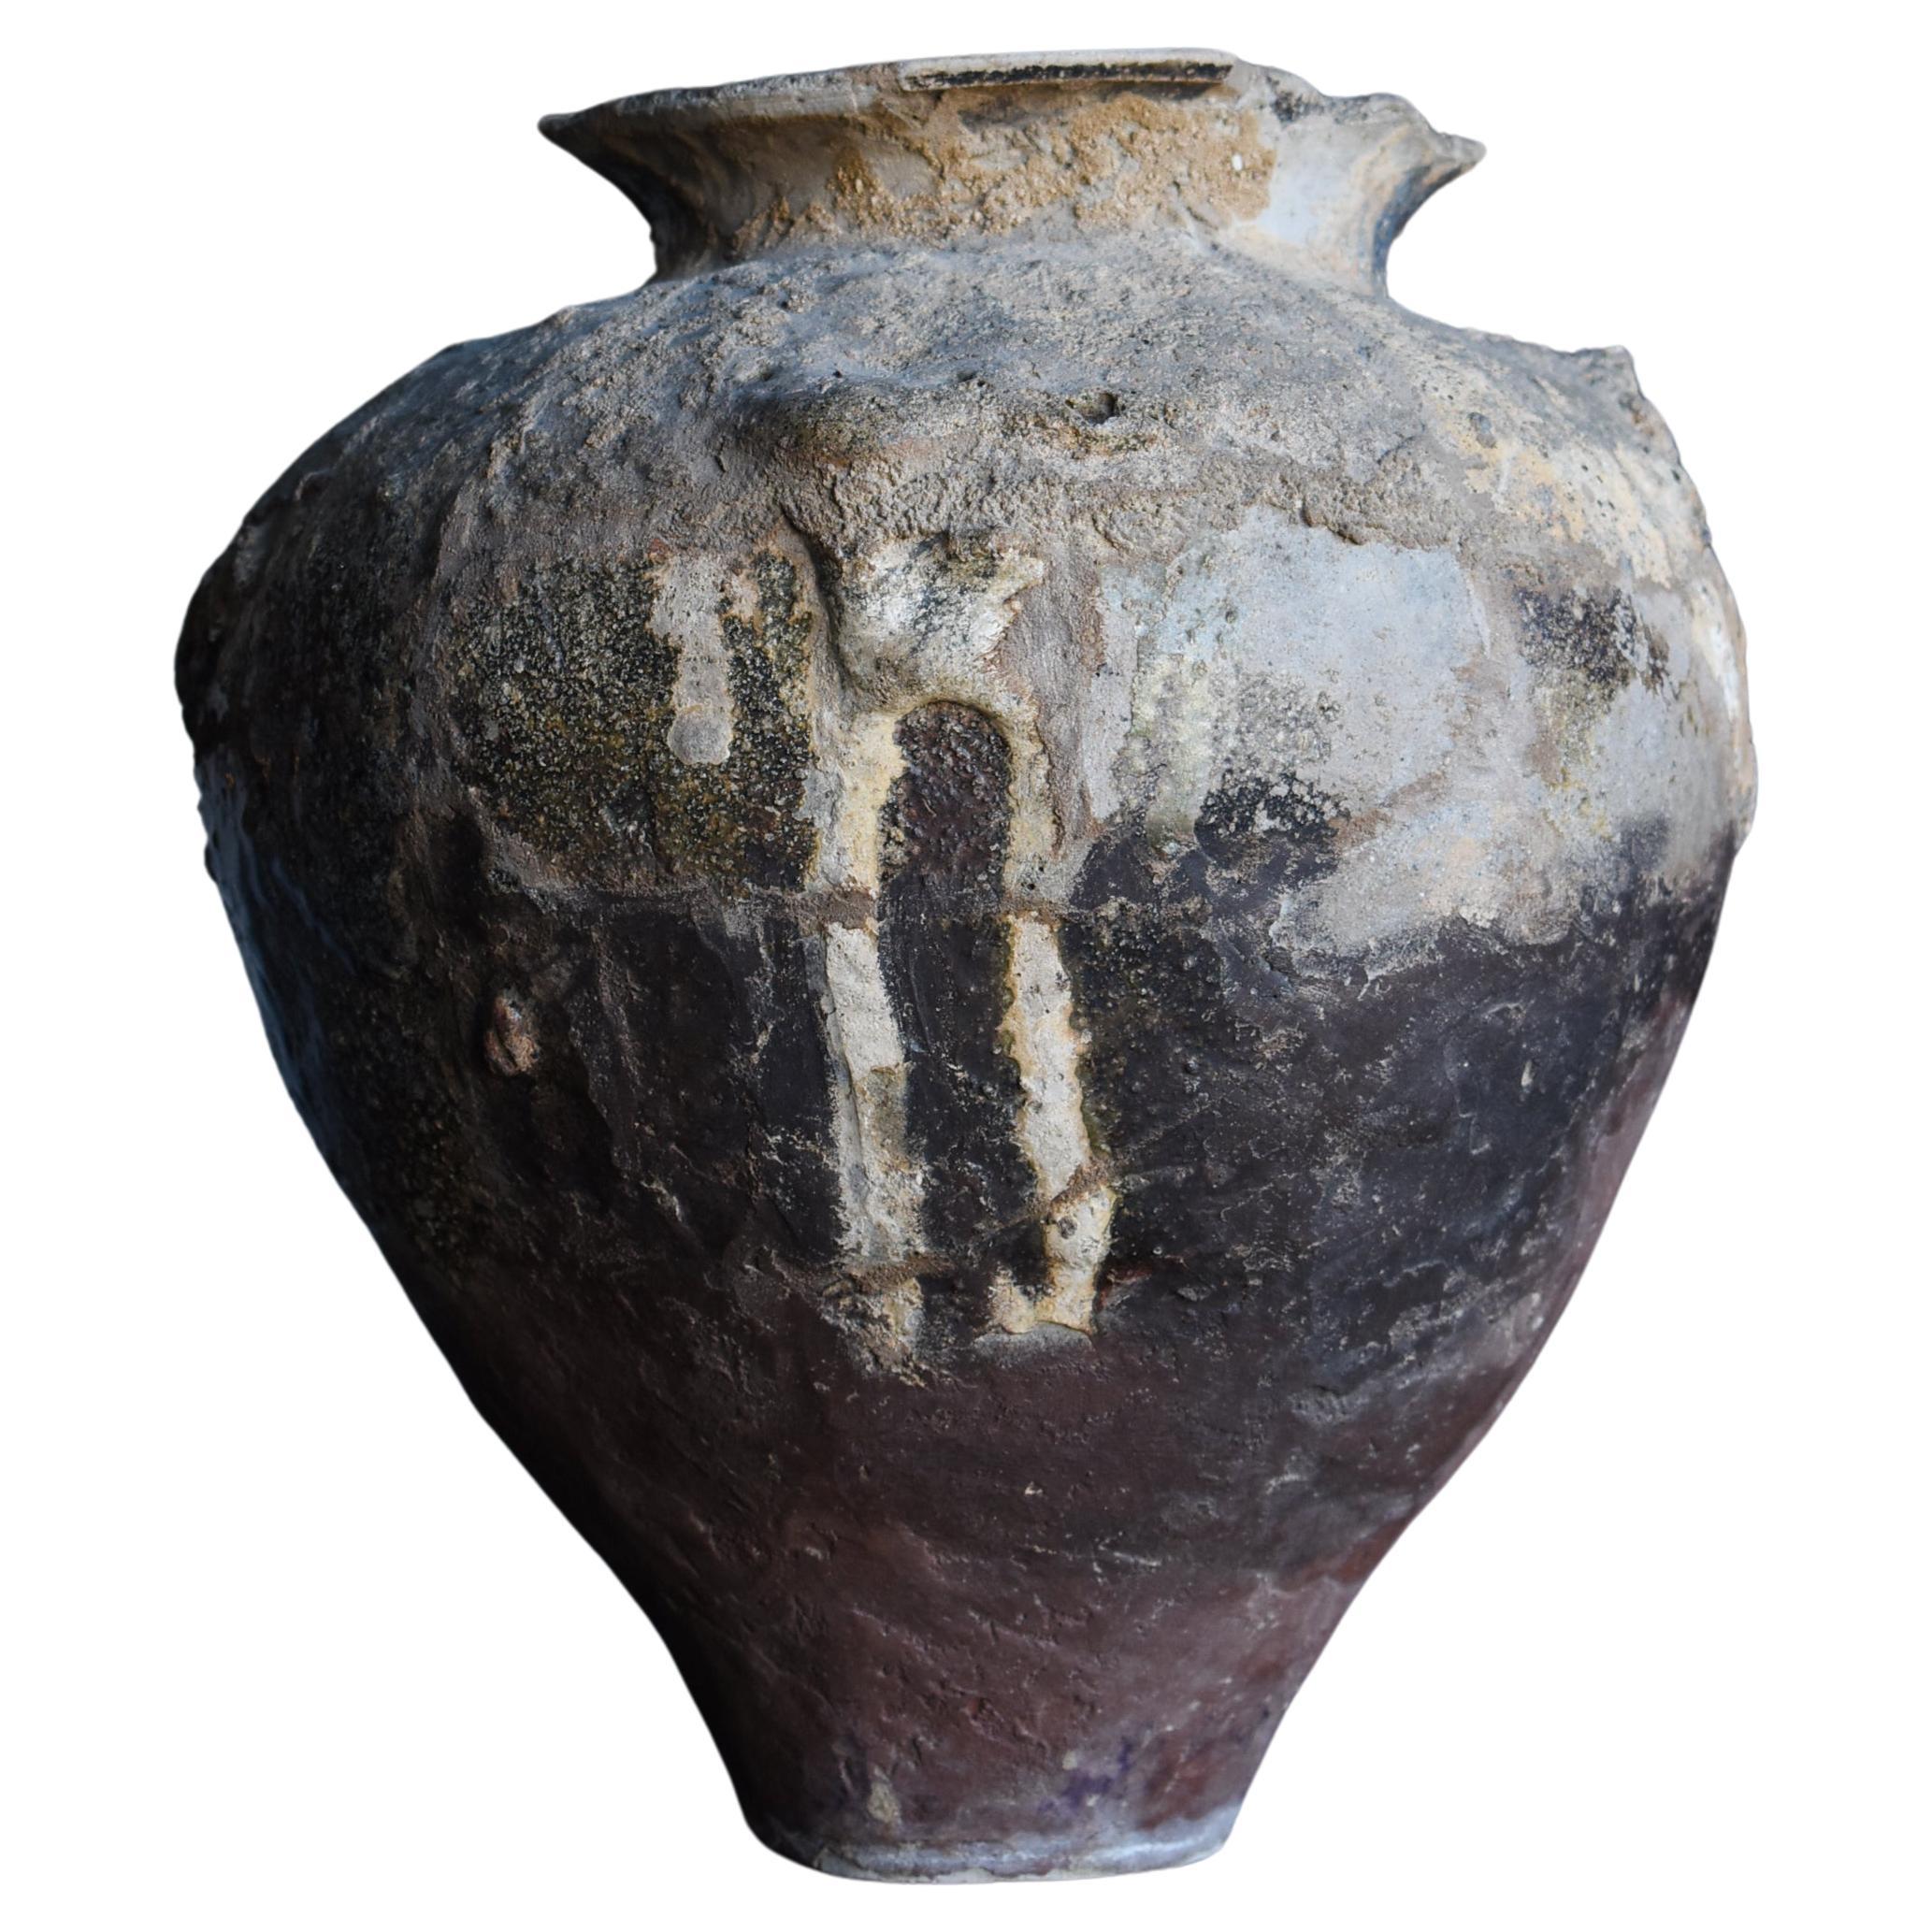 Japanese Antique Pottery Vase / Flower Vase Vessel Jar Wabisabi